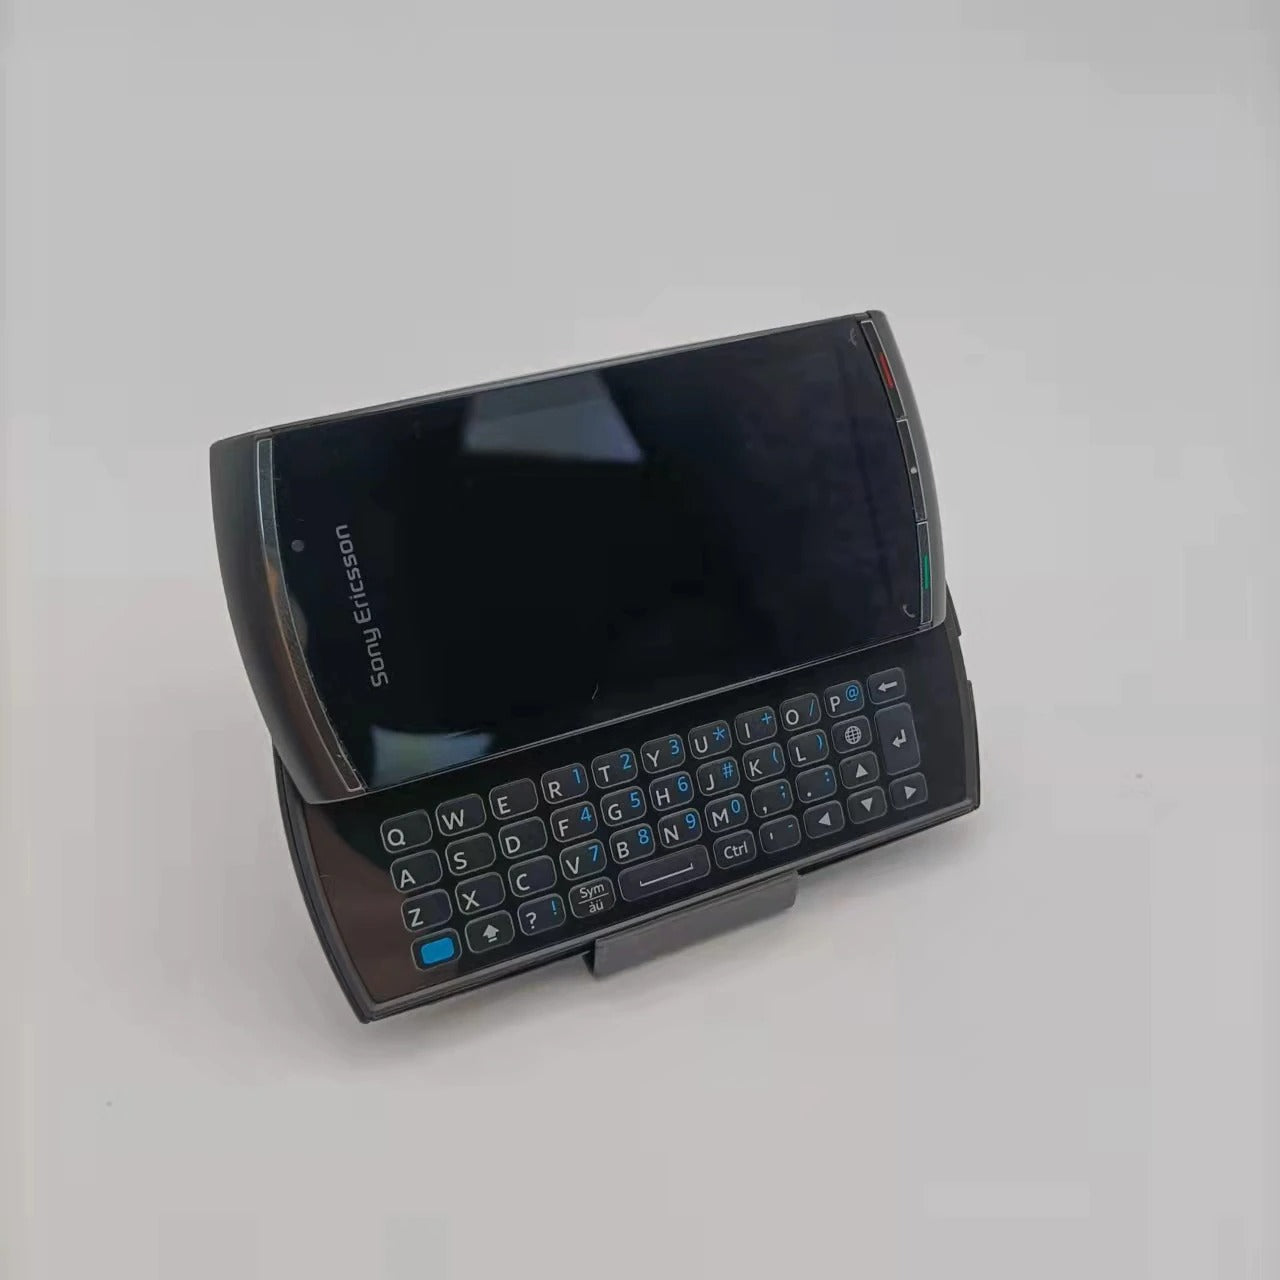 Sony Ericsson Vivaz Pro U8